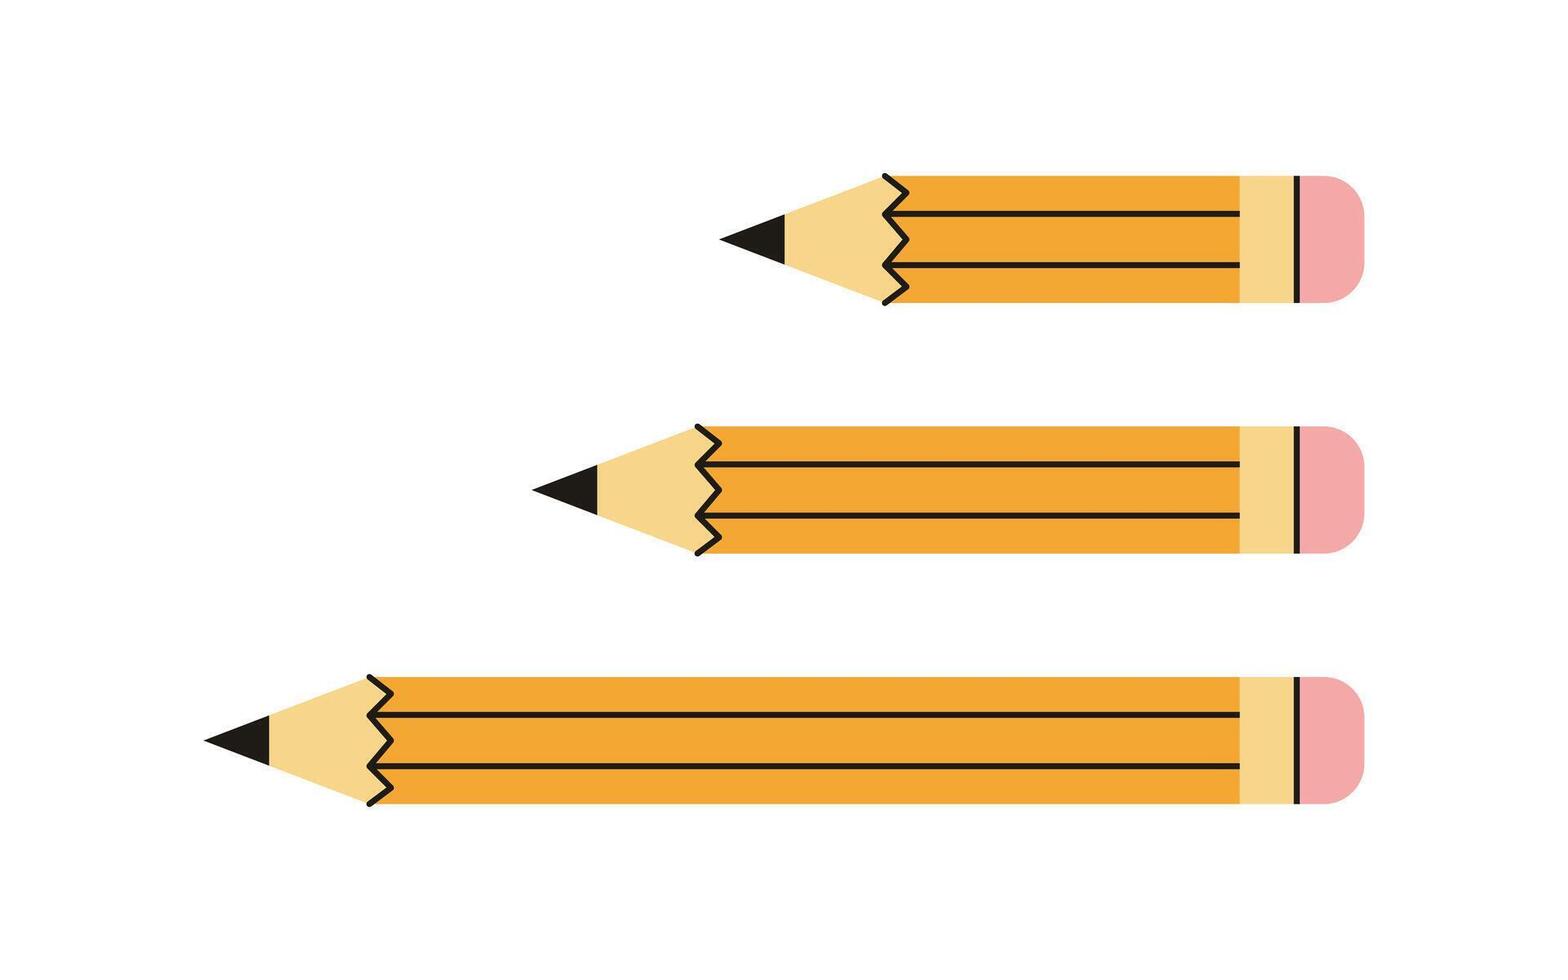 amarelo lápis e de madeira objeto para escrevendo e desenho, desenho animado curto amarelo lápis borracha borracha conceito vetor ilustração.